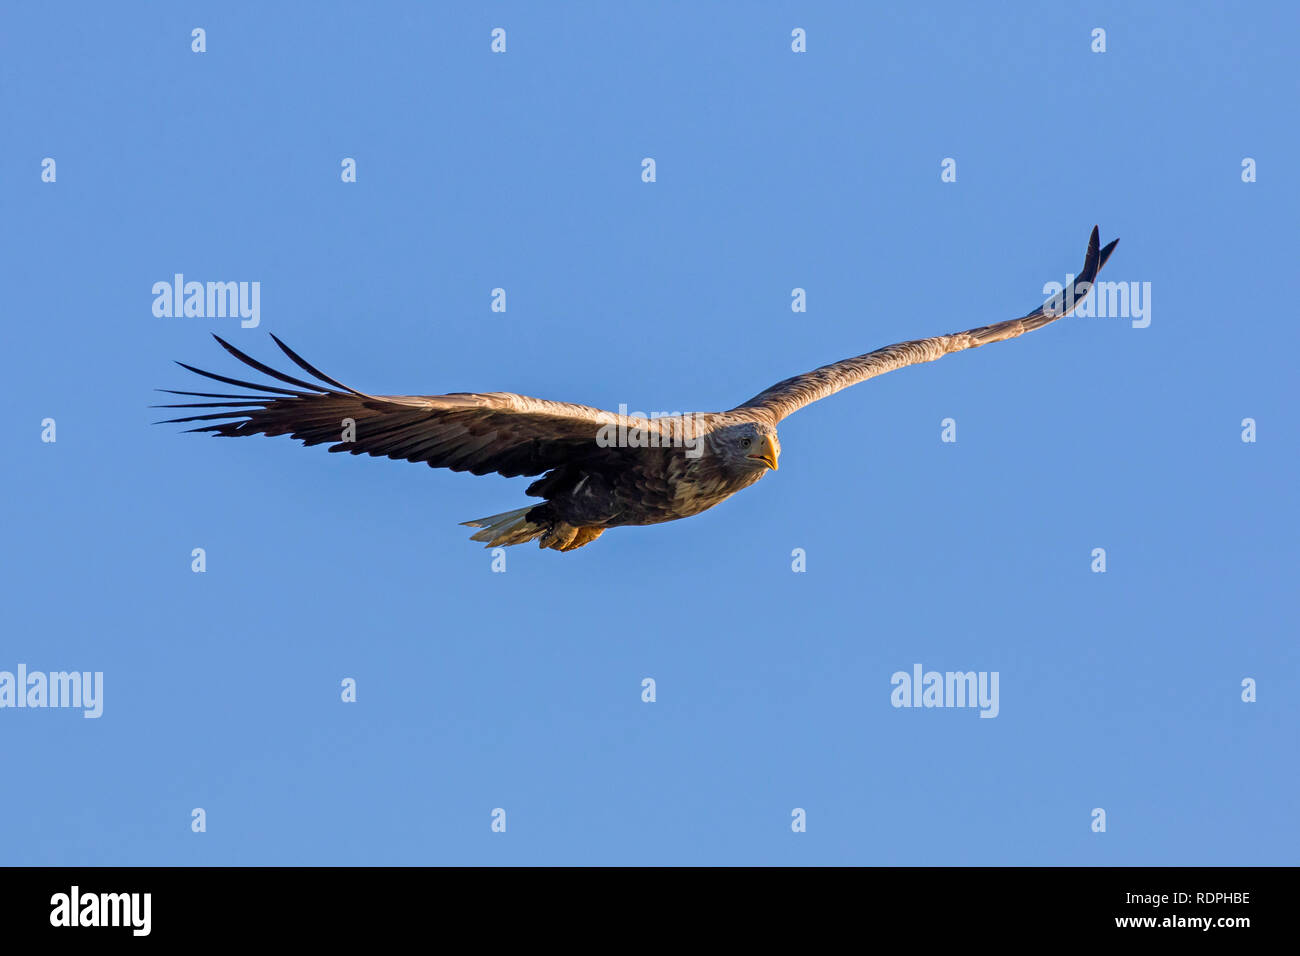 White-tailed eagle / sea eagle / erne (Haliaeetus albicilla) in flight soaring against blue sky Stock Photo